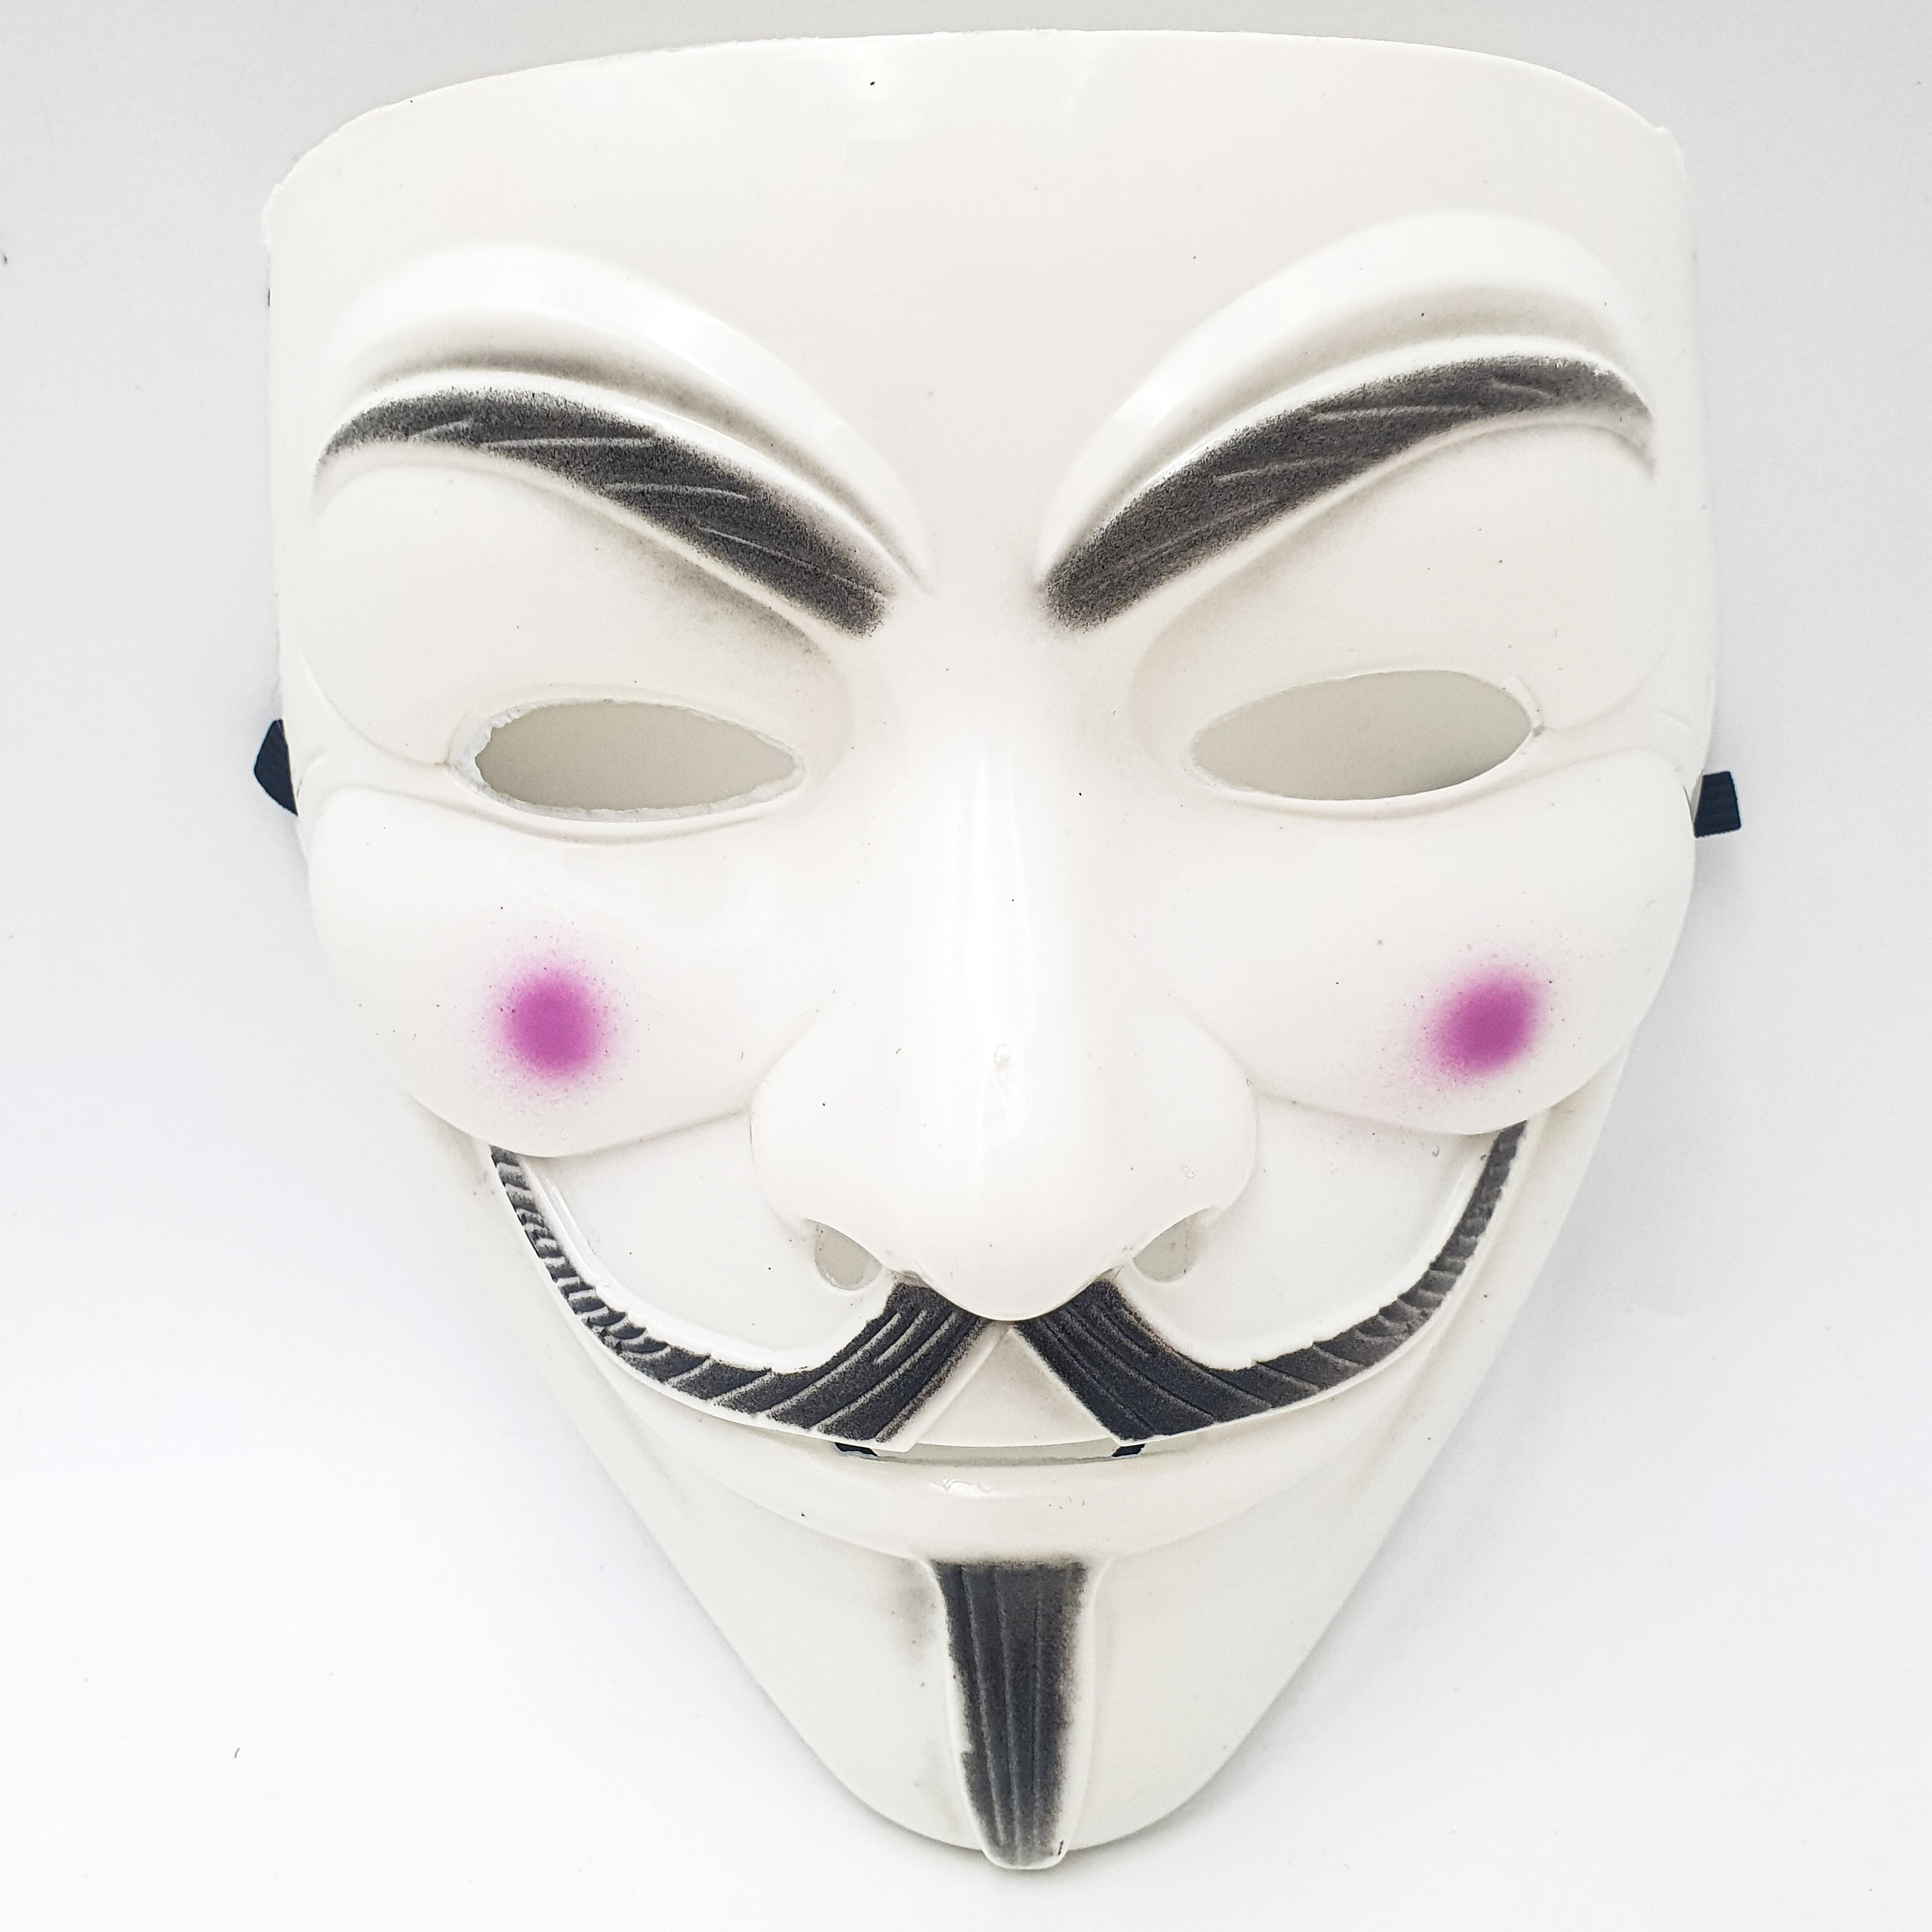 Маска Анонимуса, Маска Хакера,Маска Вендетта, Маска Гай Фокс, Маска гая фокса, Маски Анонимуса.